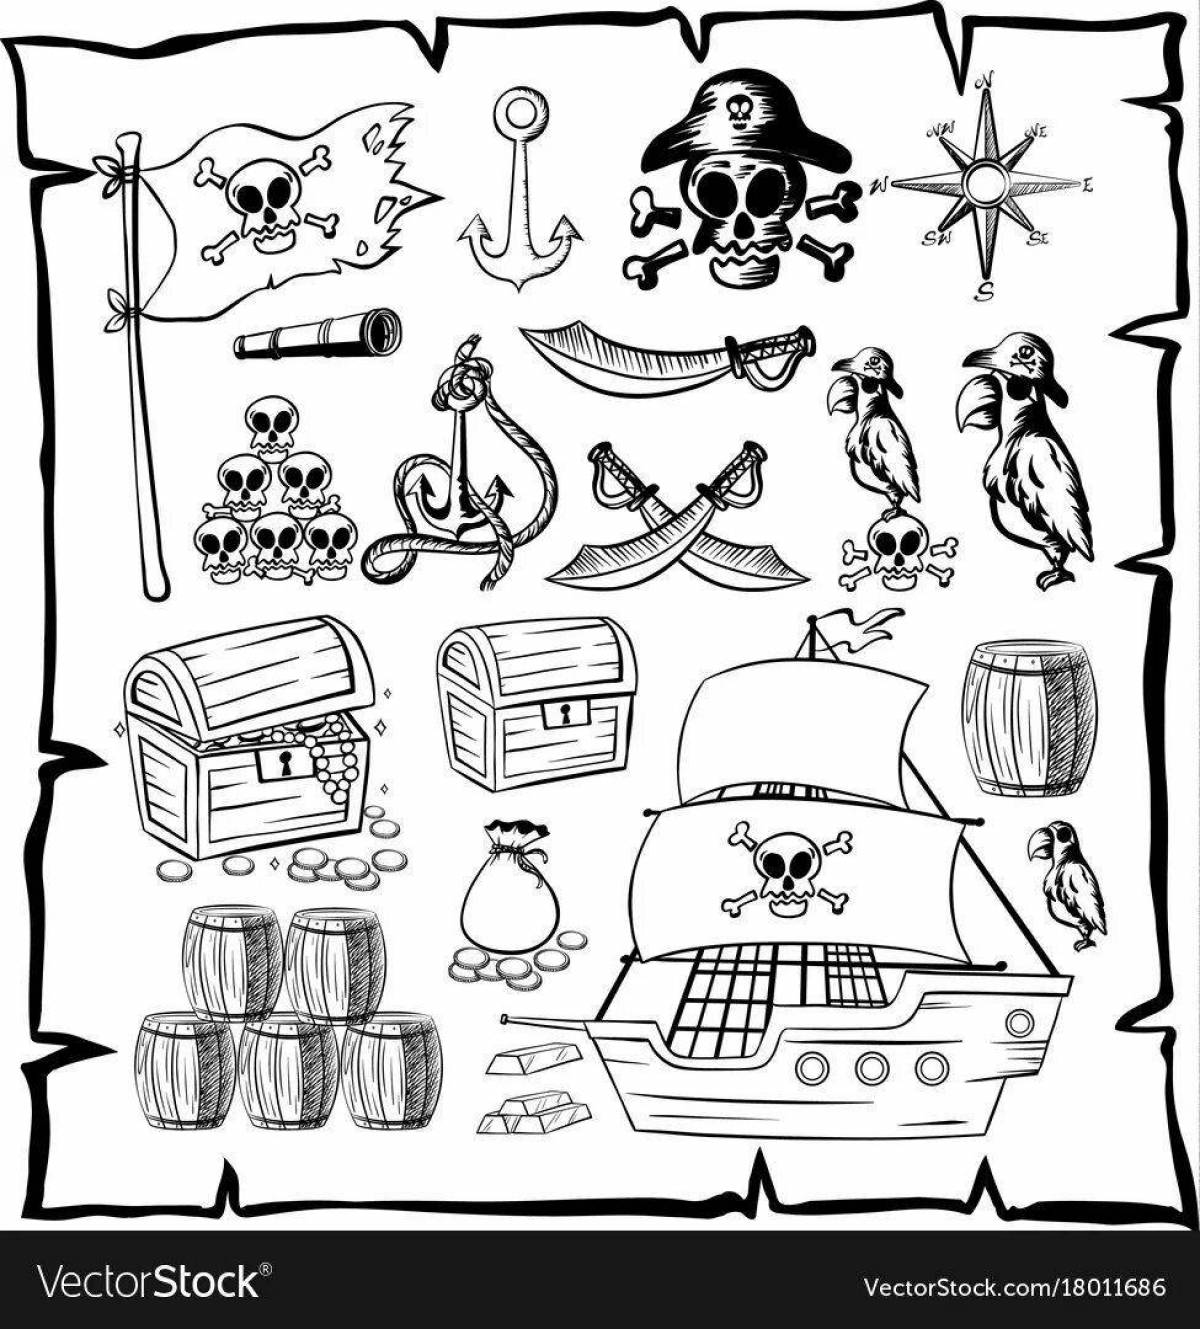 Раскраска драматическая карта пиратских сокровищ